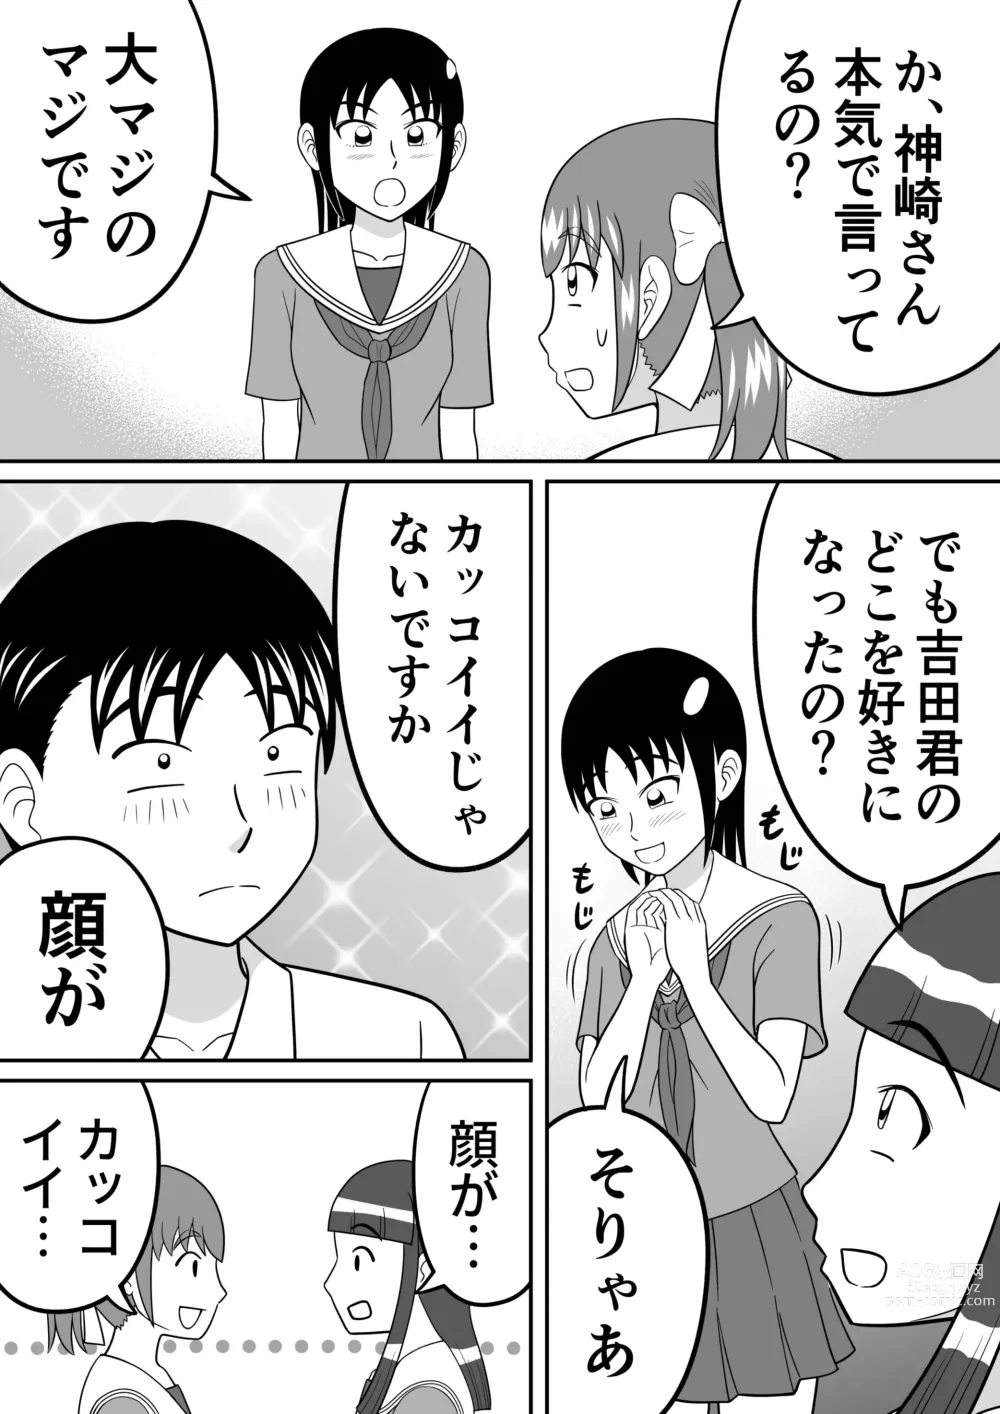 Page 6 of doujinshi Shocking!!